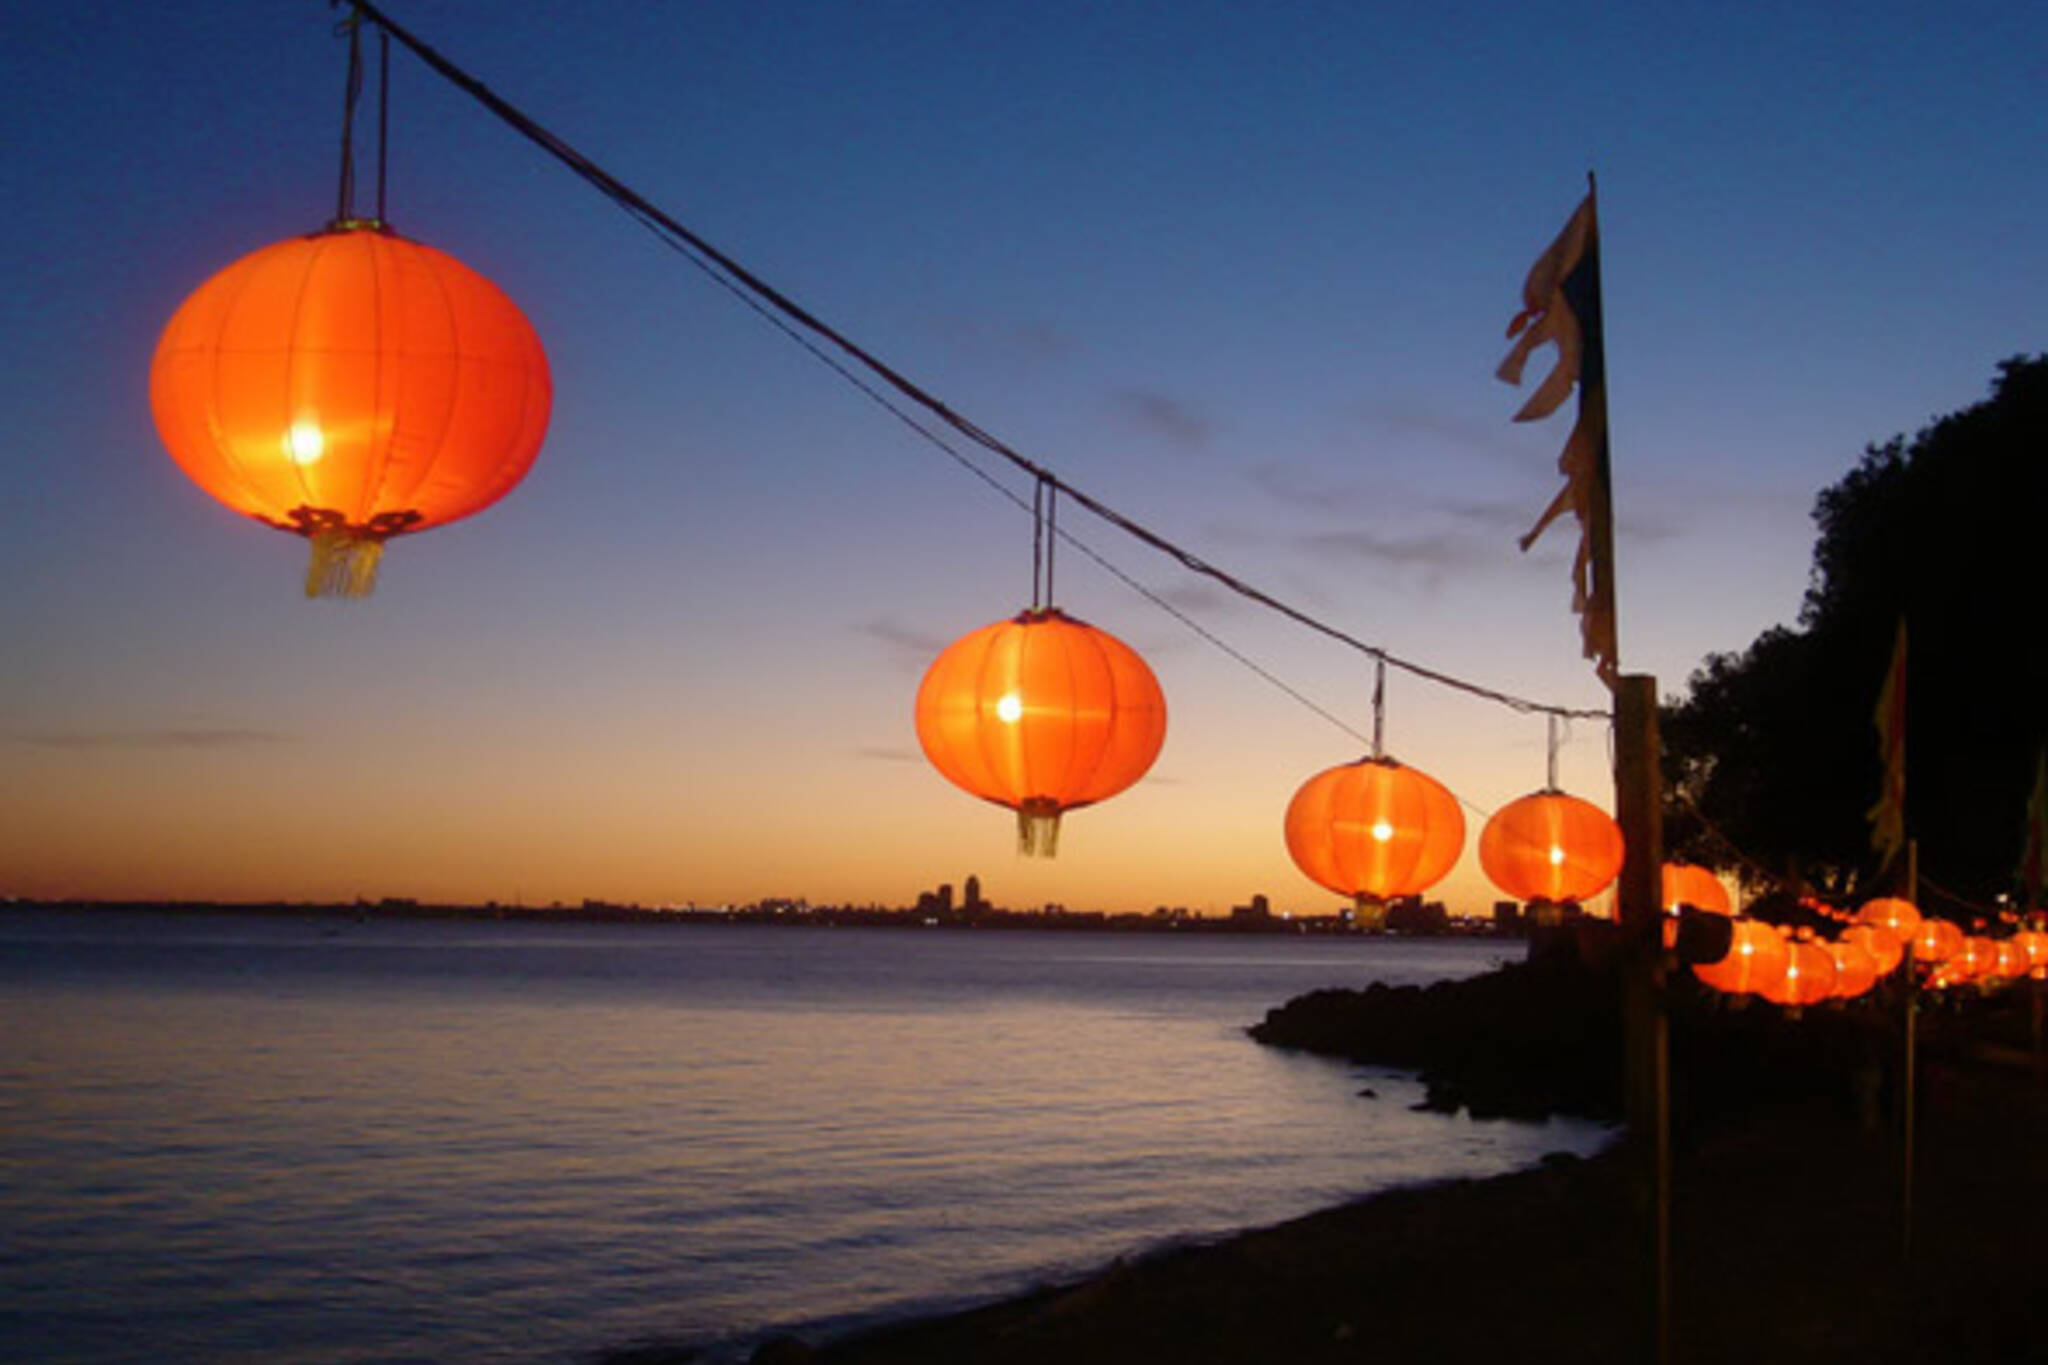 chinese lanterns